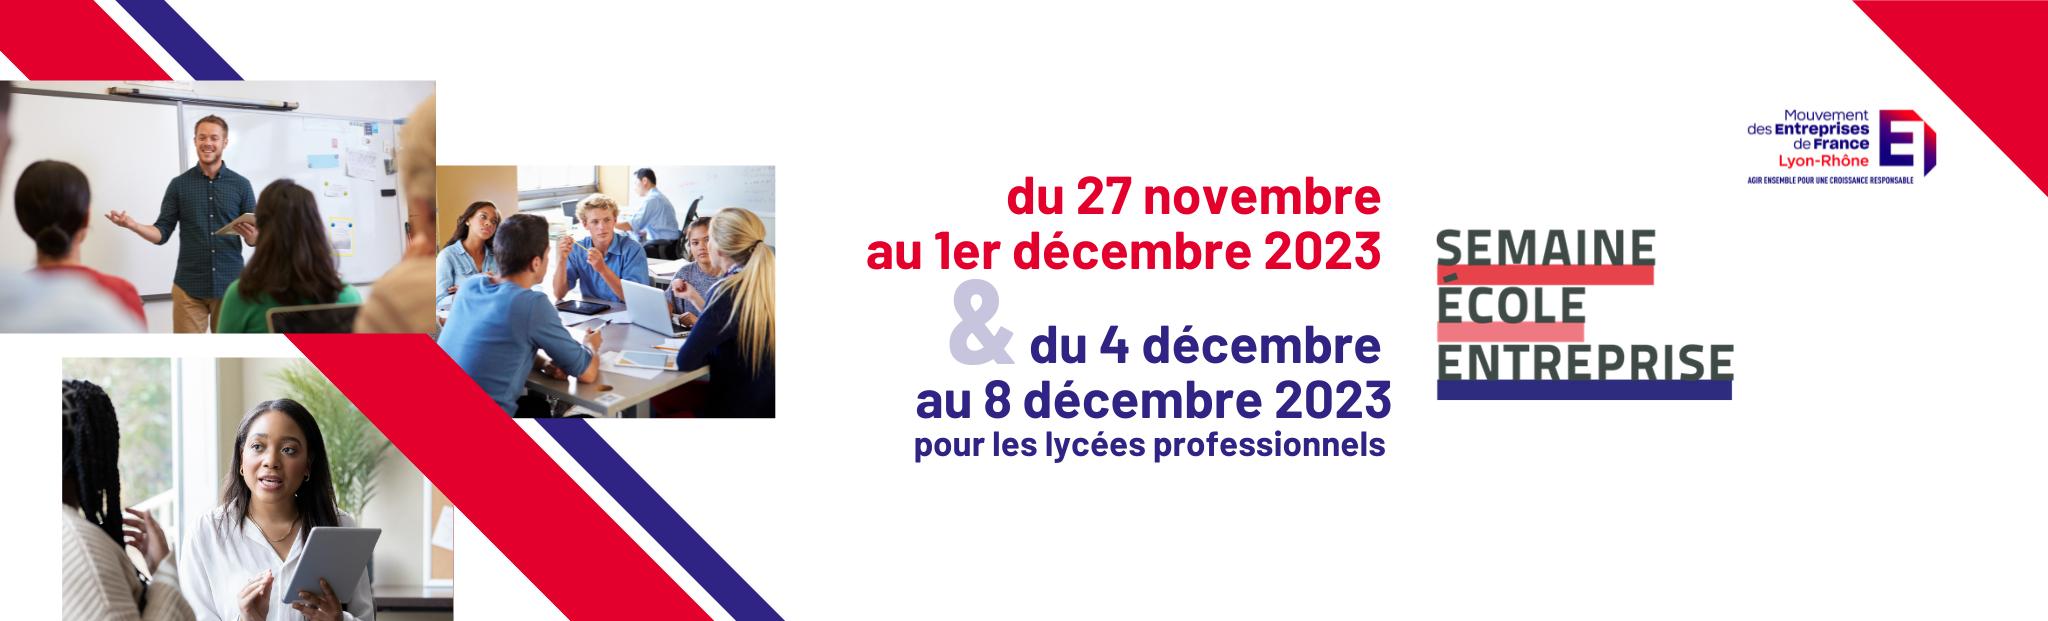 MEDEF Lyon-Rhône, semaine école entreprise